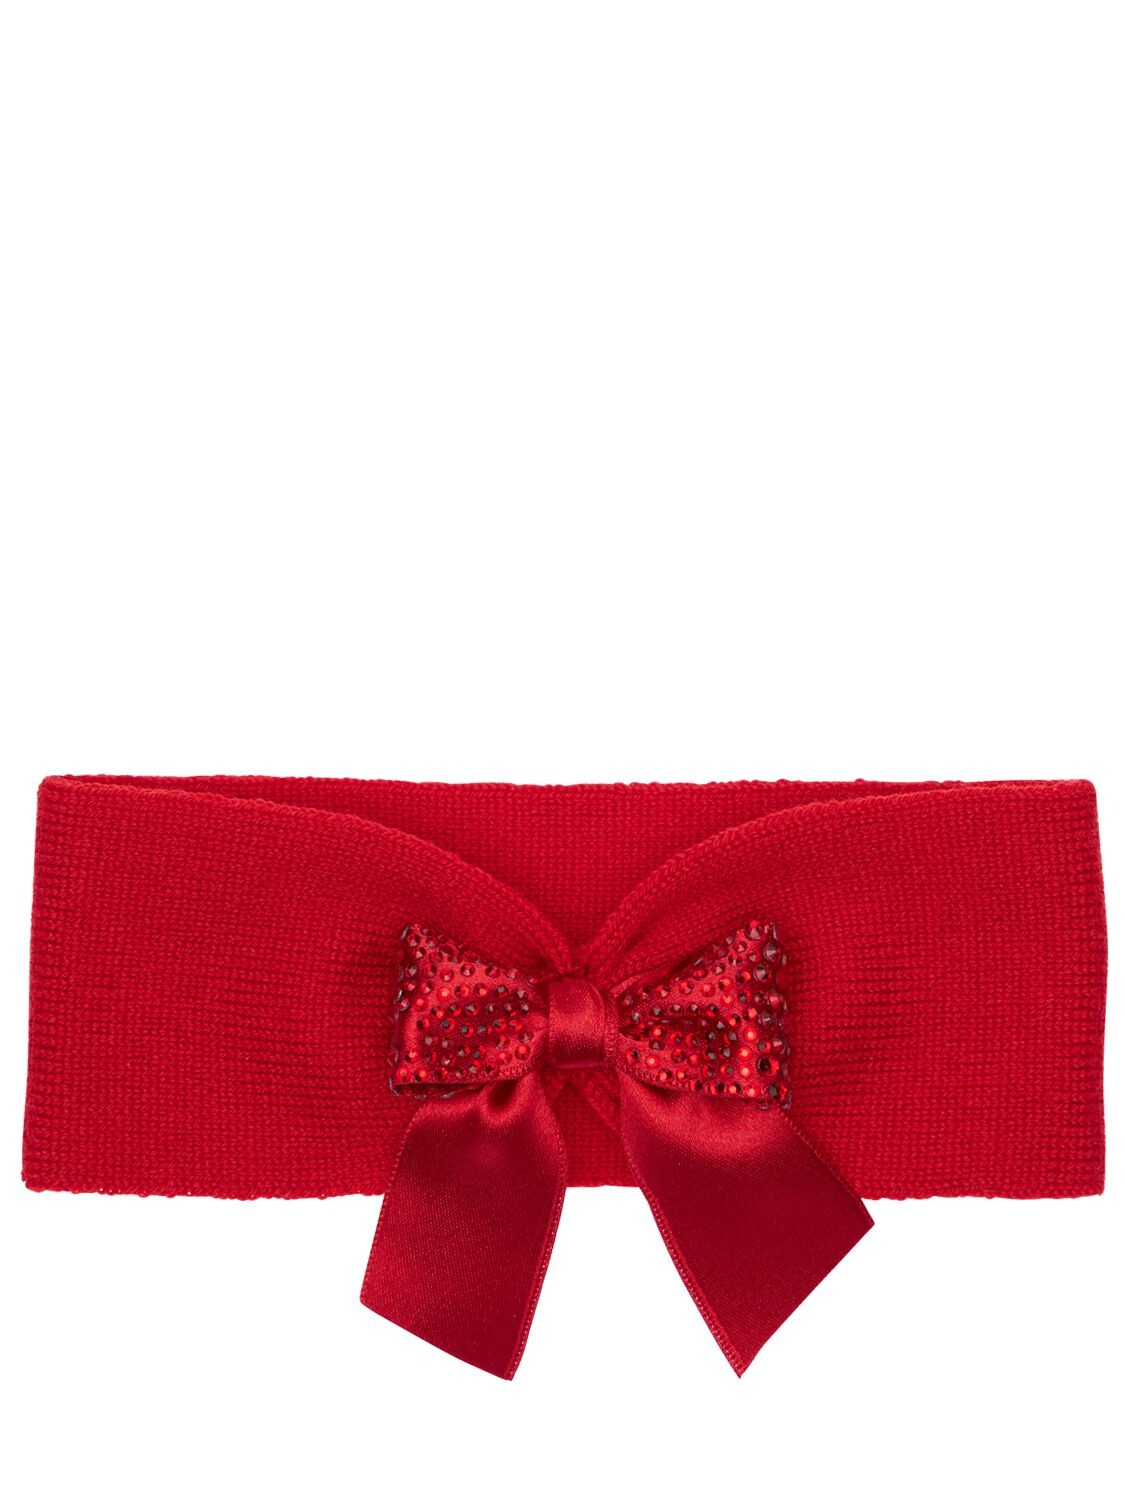 La Perla Kids' Interlock Wool Headband W/ Bow Appliqué In Red